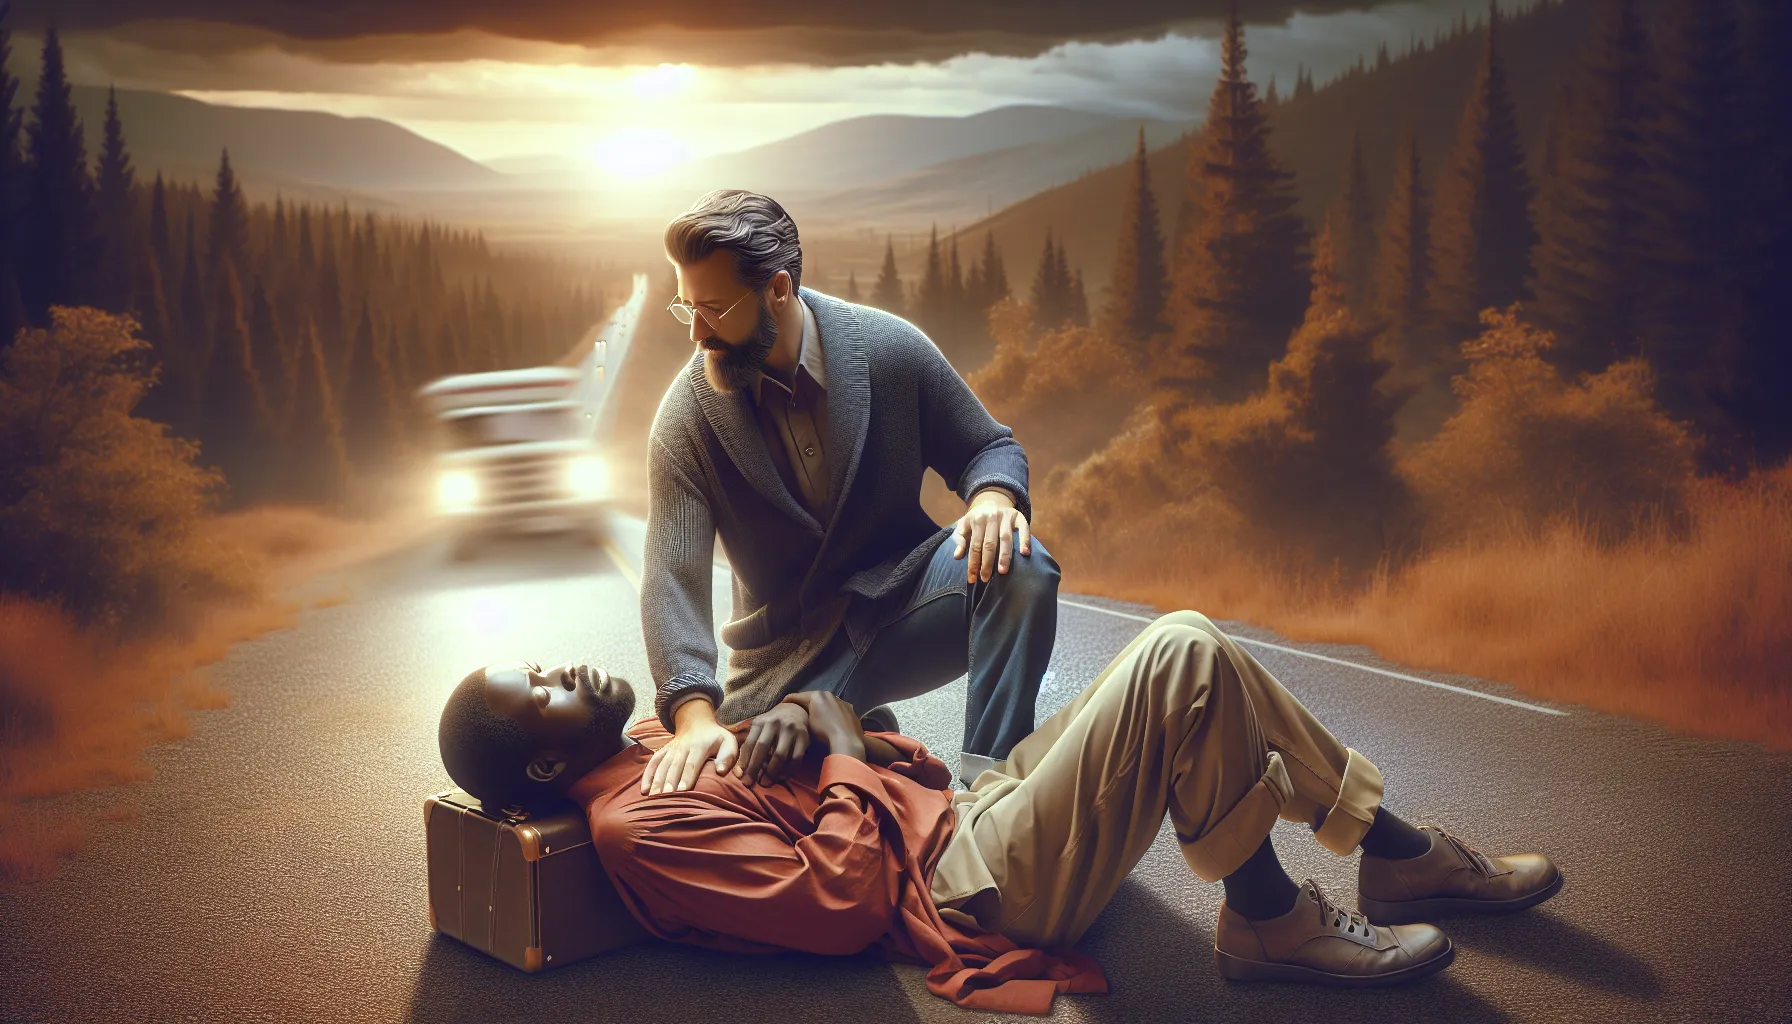 Un buen samaritano se detiene a ayudar a un hombre herido en la carretera